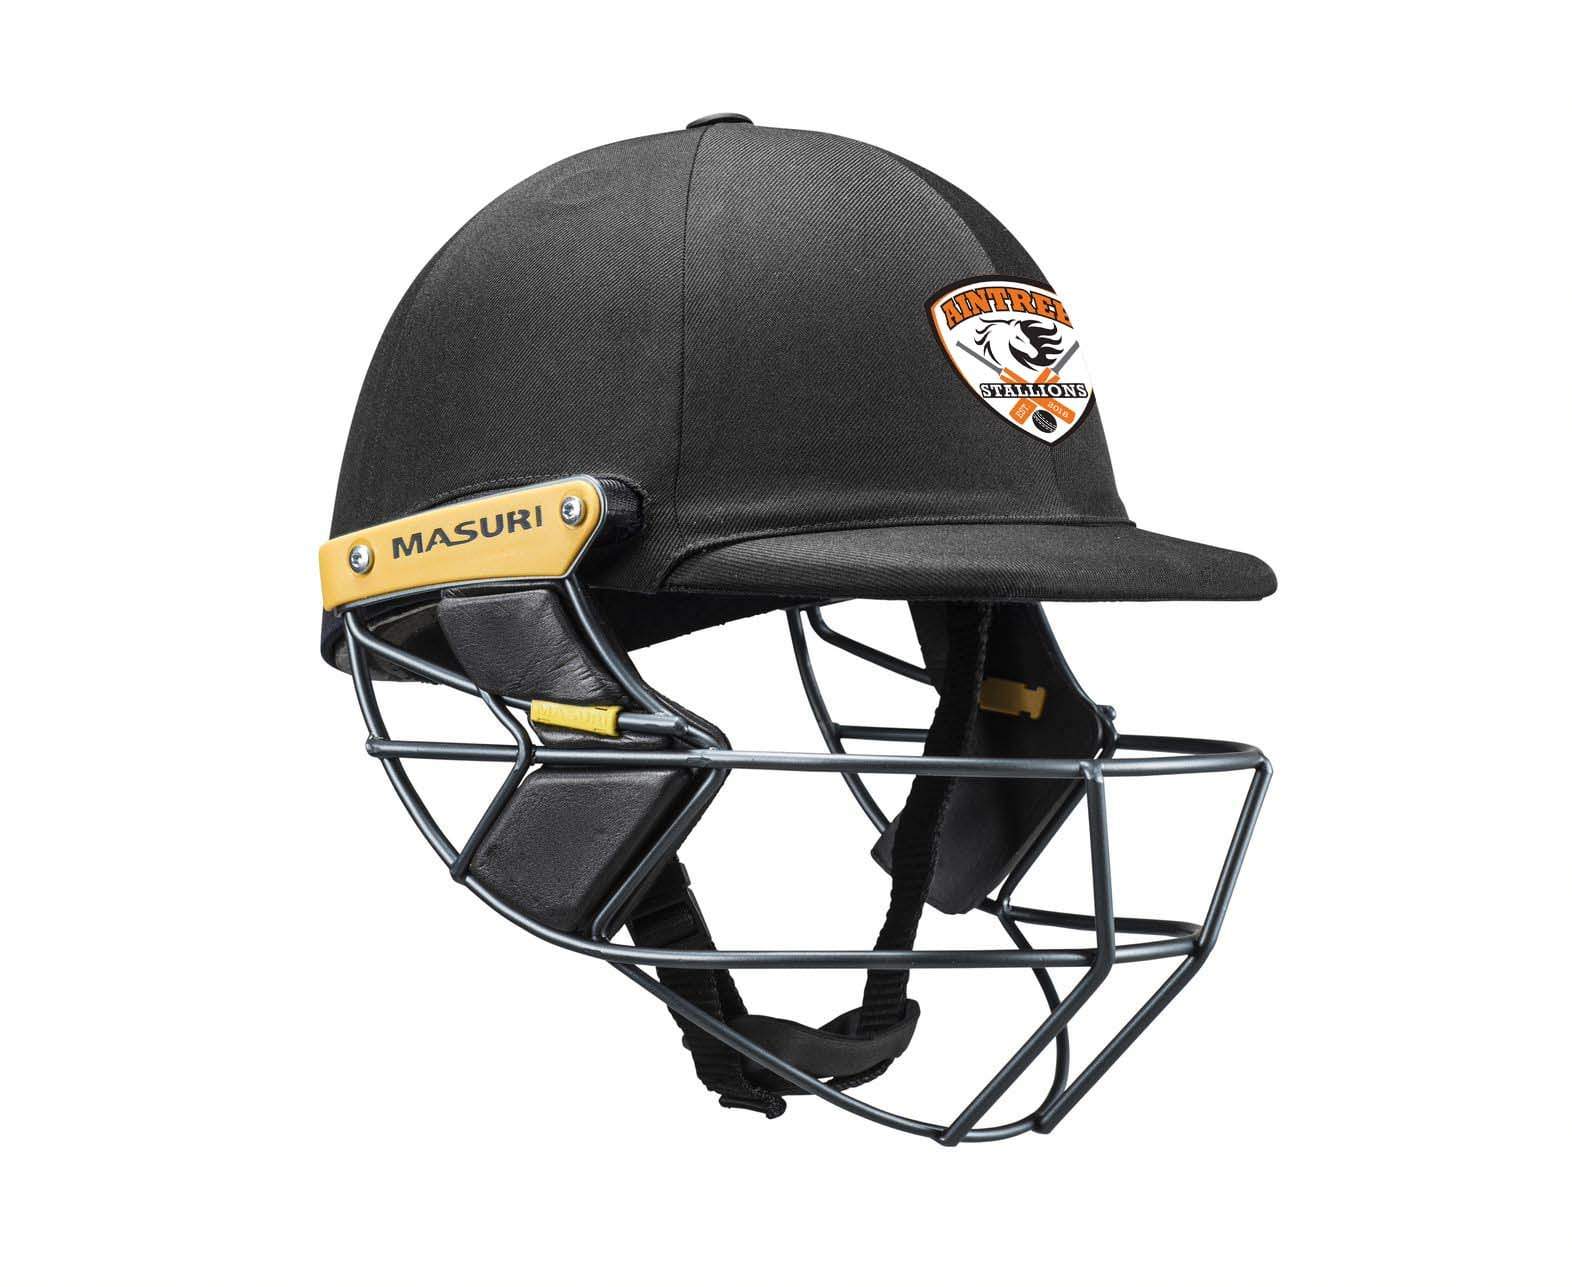 Masuri Club Helmet Aintree Cricket Club Helmet